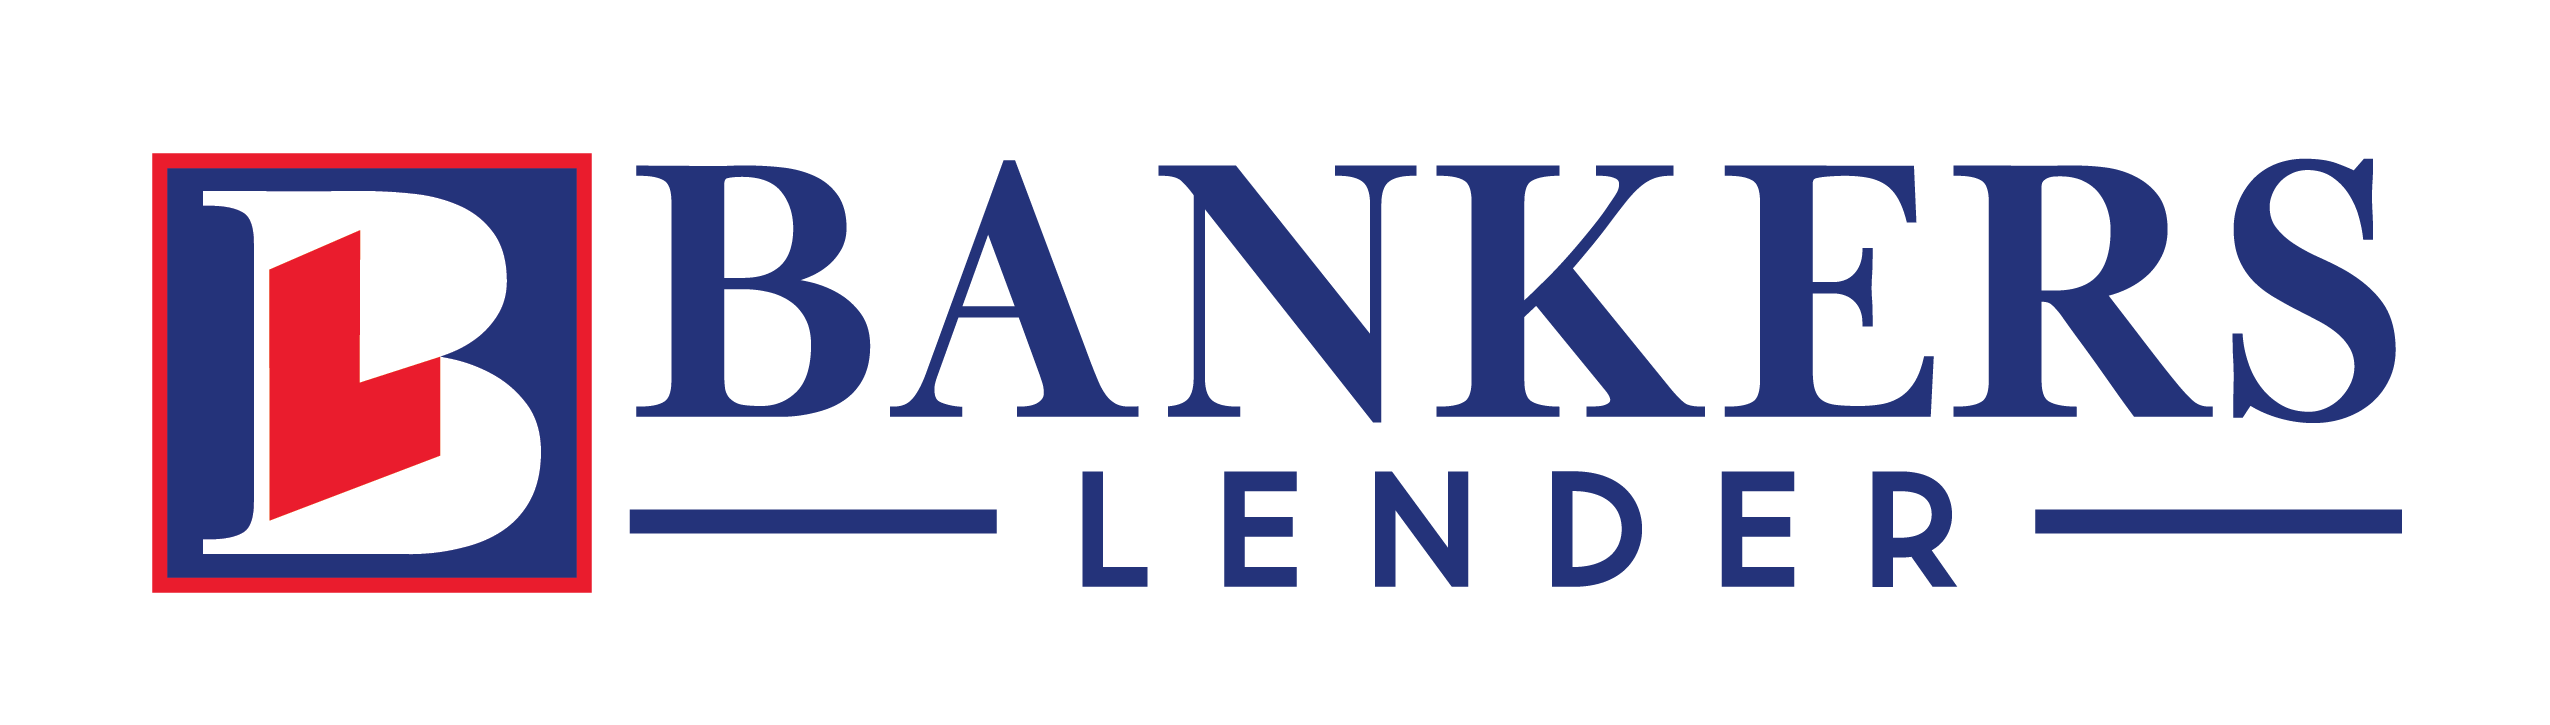 Bankers Lender logo